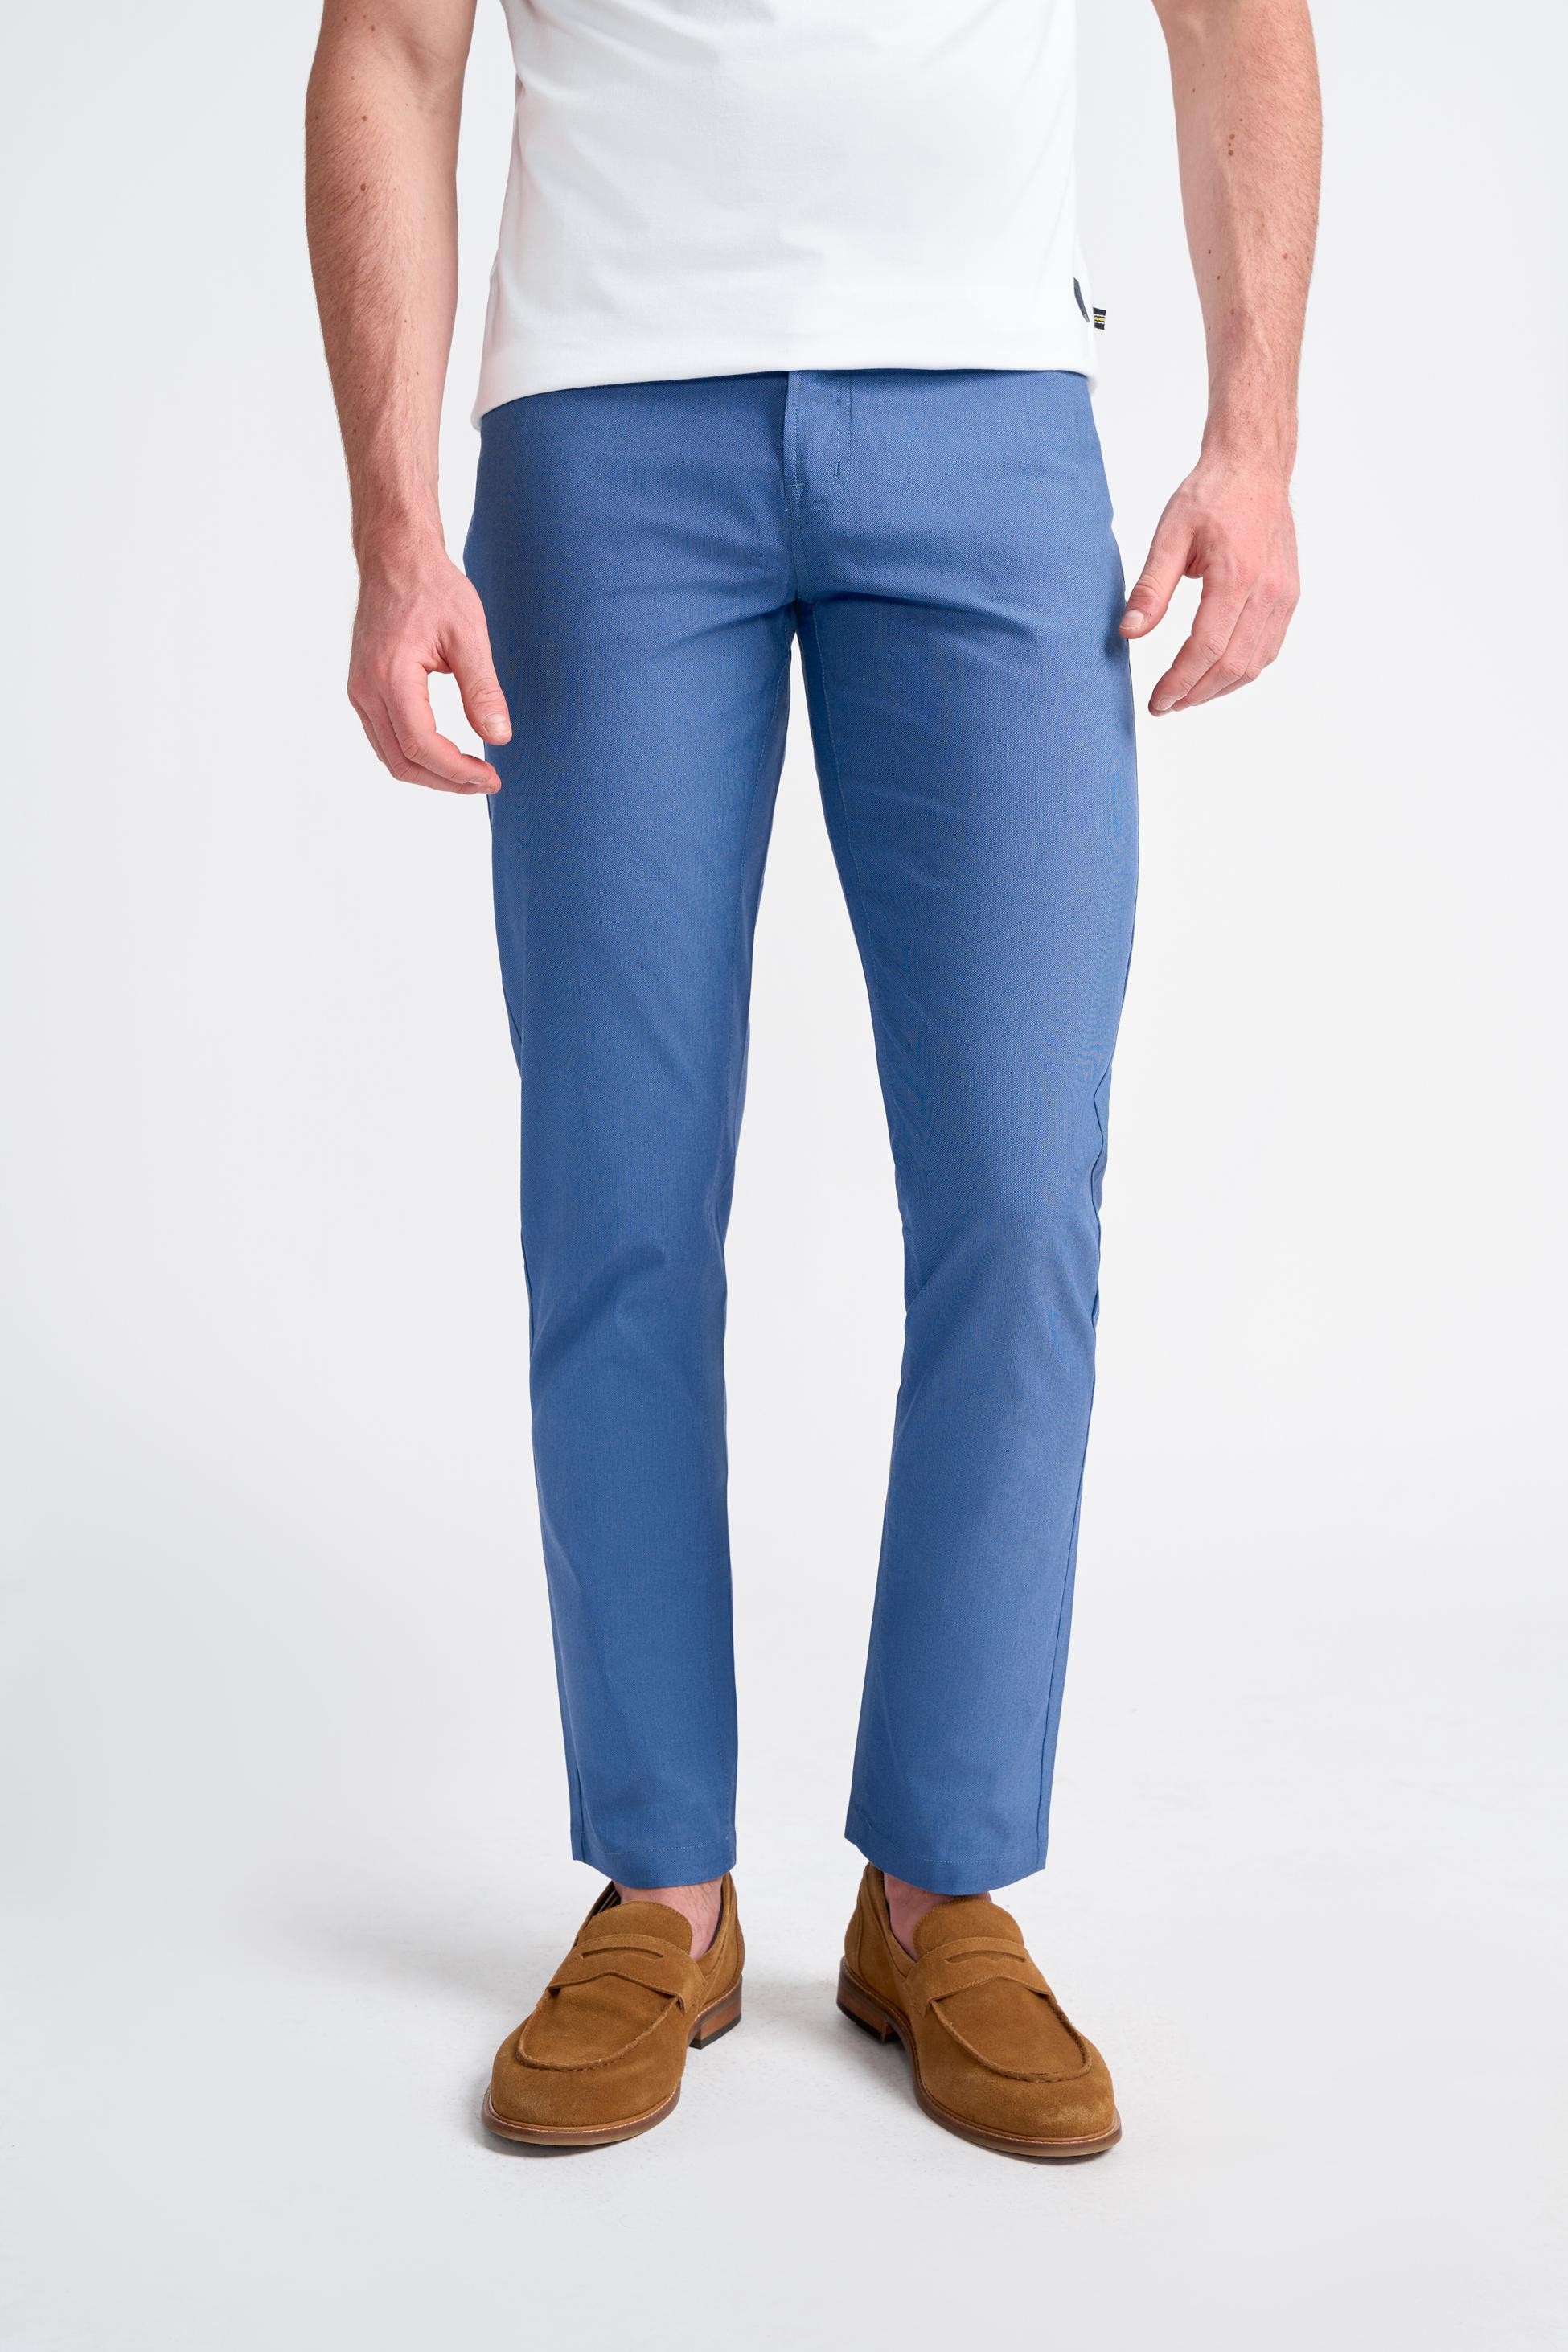 Pantalons Chino Coupe Jean en Mélange de Coton pour Hommes – DALTON - Cobalt  Blue